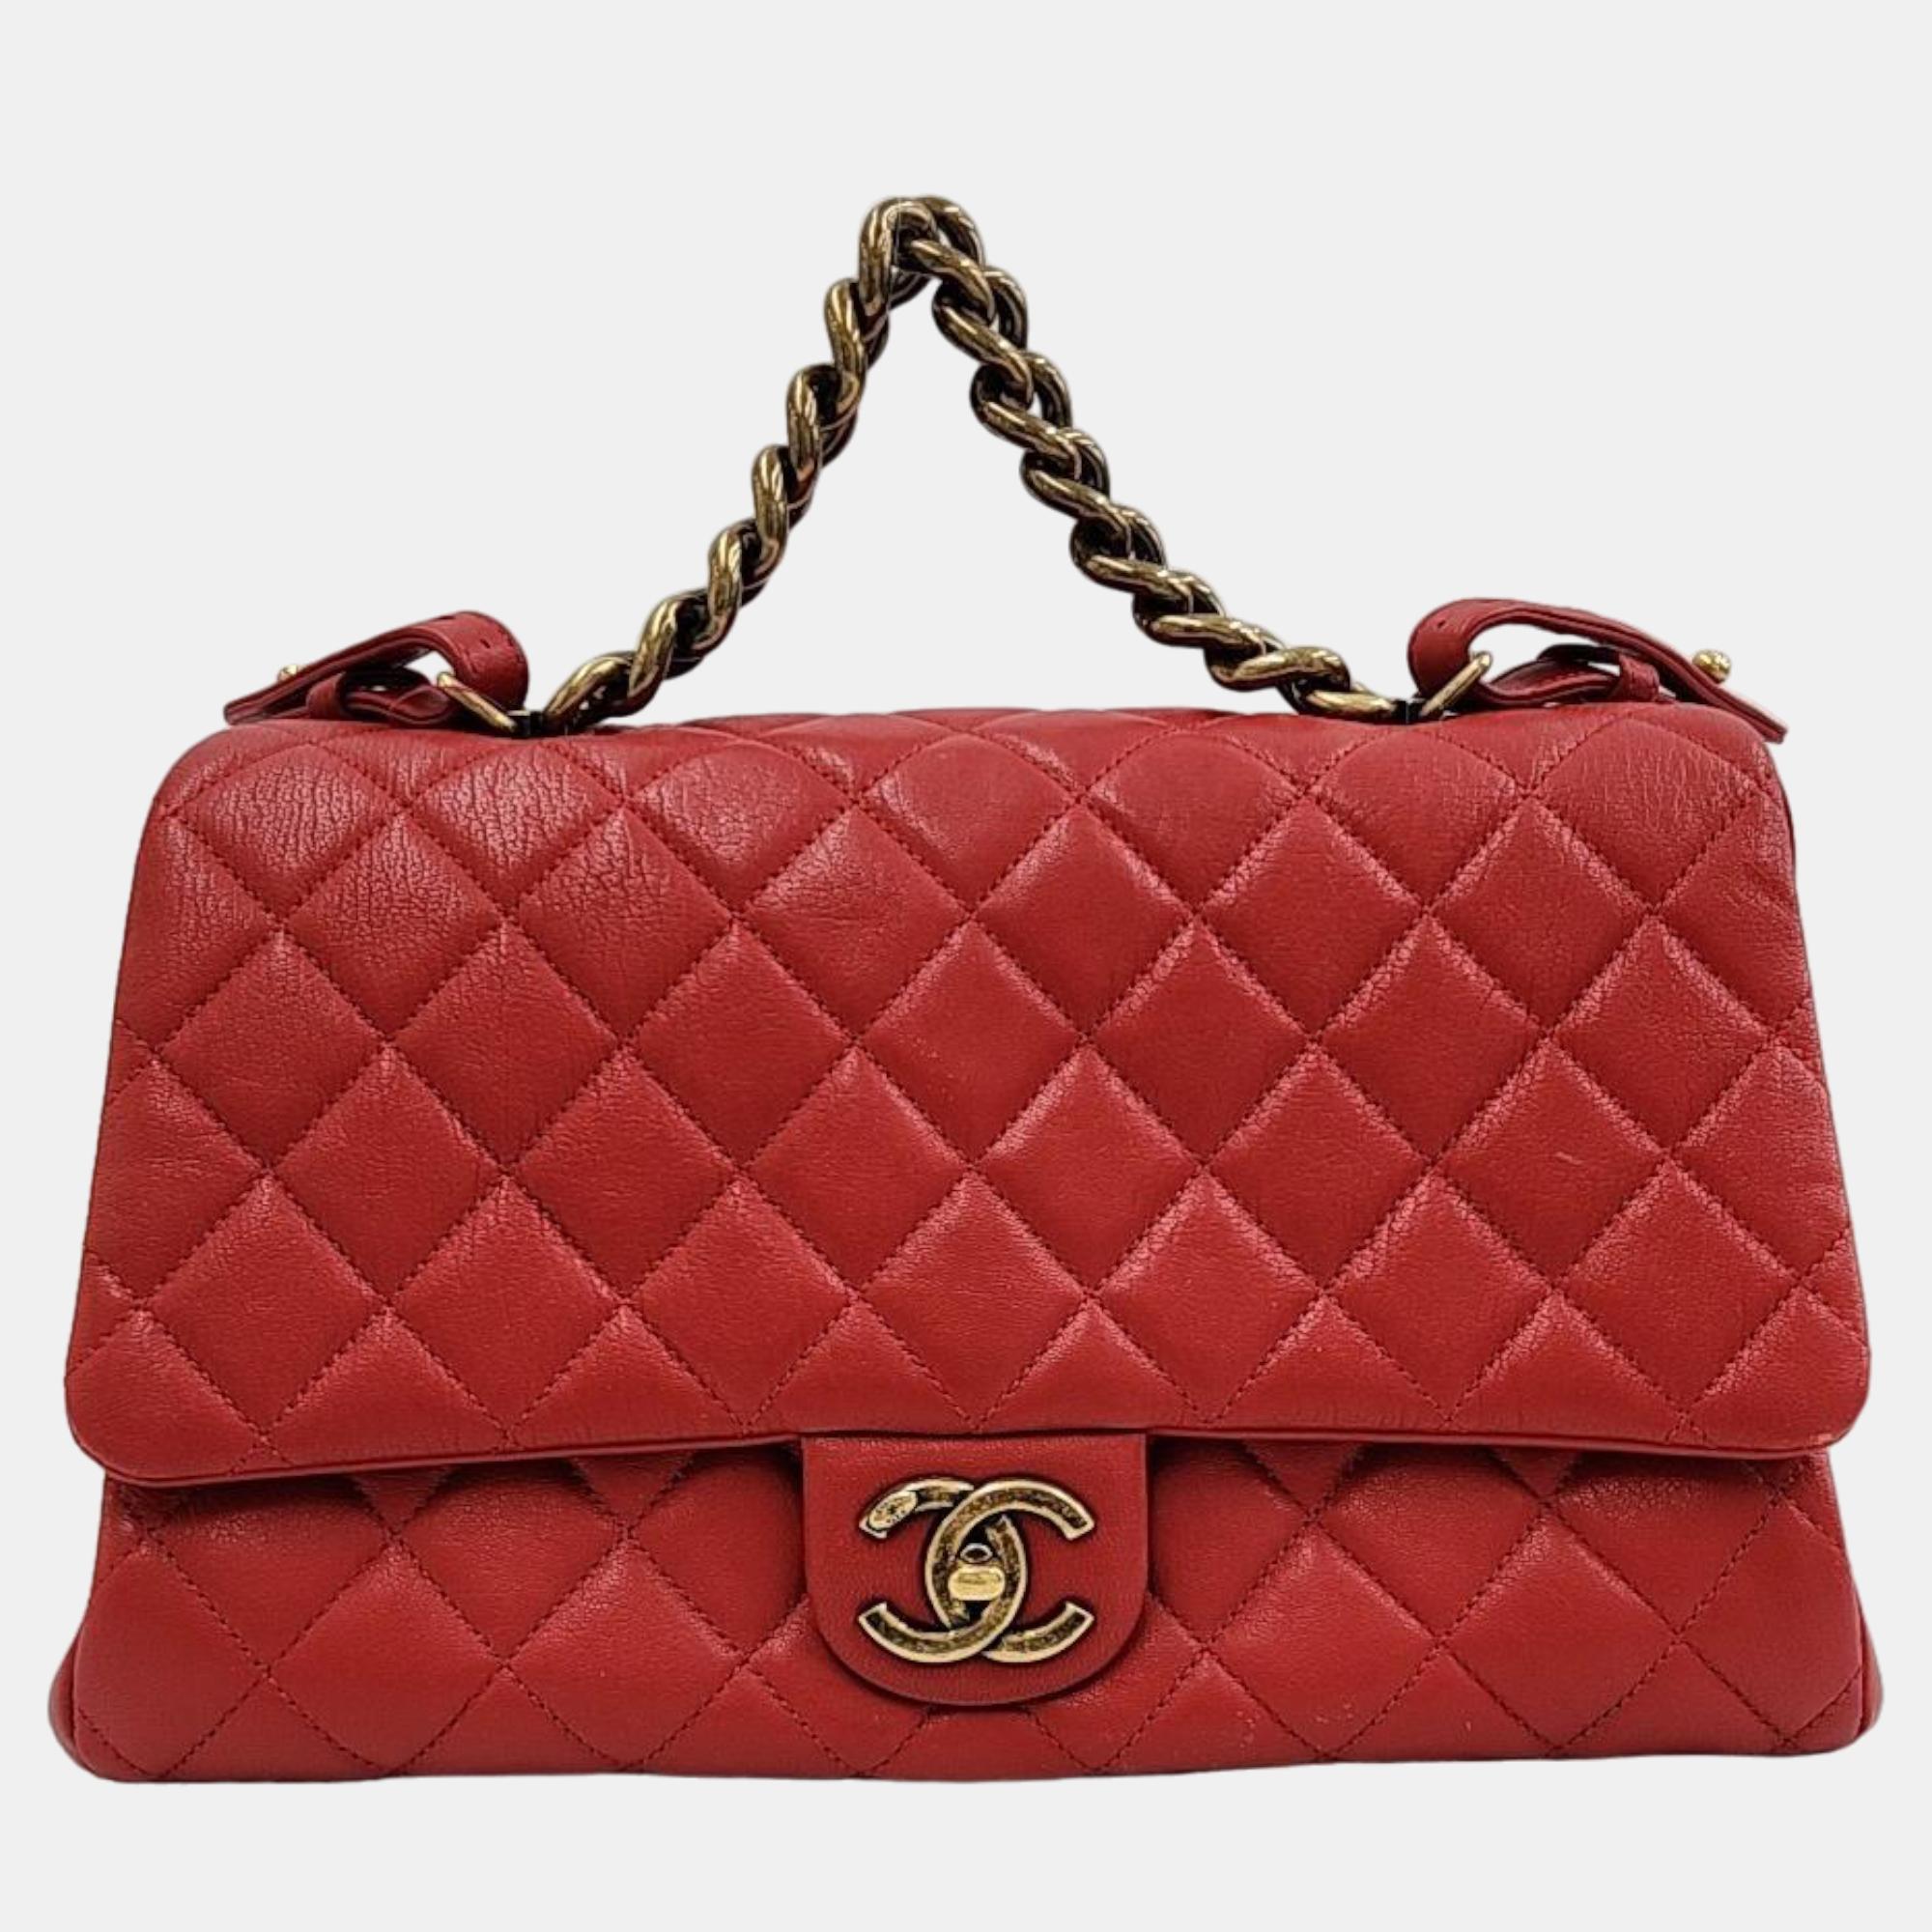 Chanel red leather paris-rome large trapezio flap bag